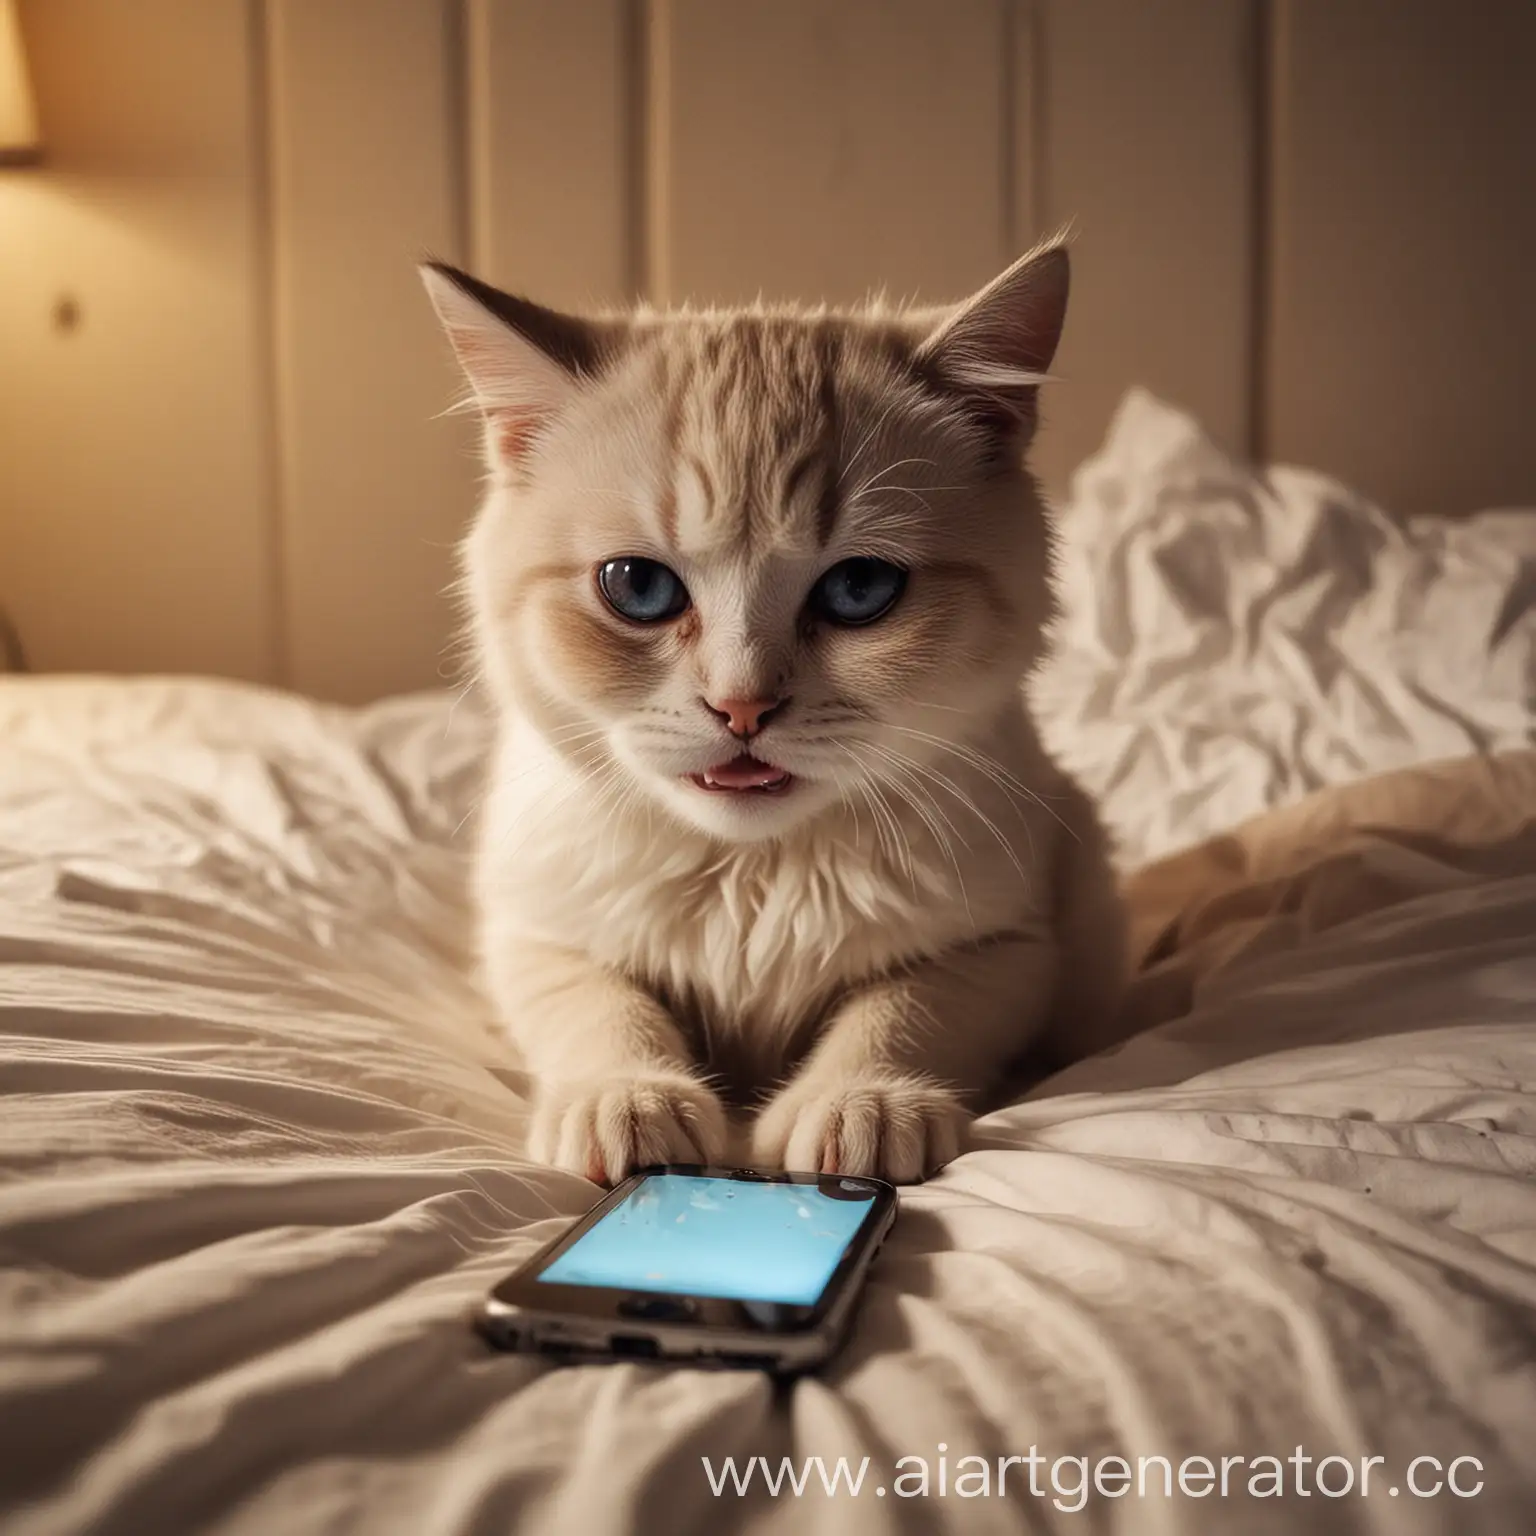 Плачущий котик сидит вечером на кровати с Айфоном смотрит в него и плачет